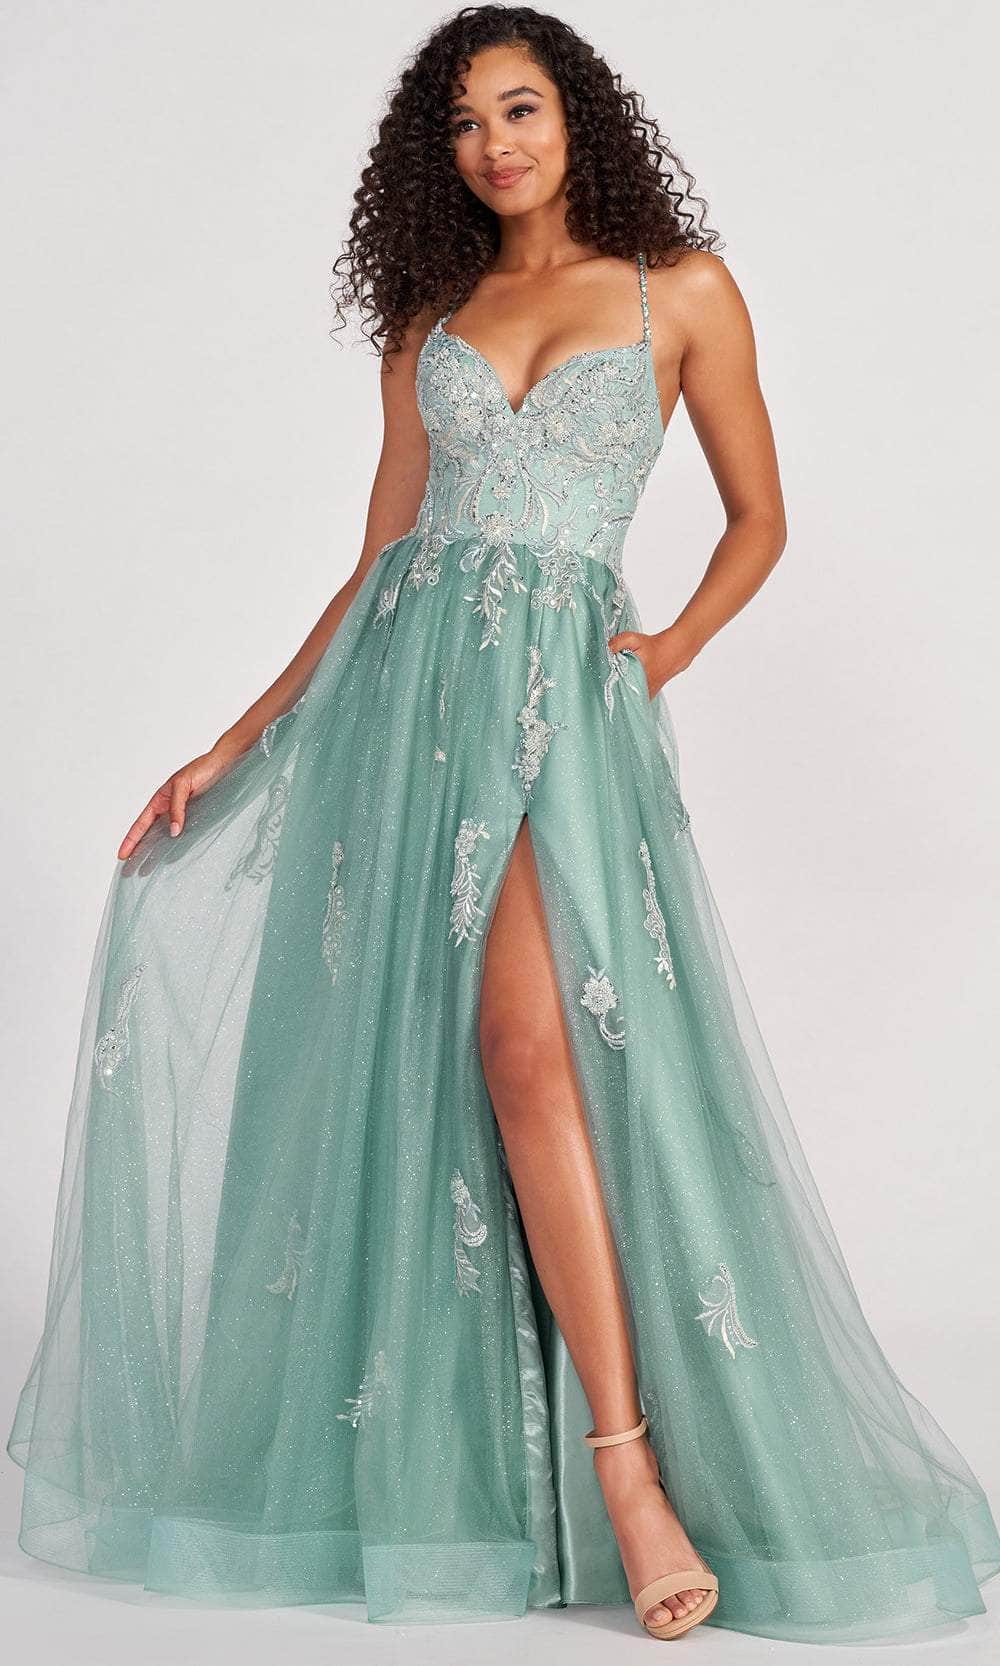 Image of Colette For Mon Cheri CL2062 - Glitter Tulle Prom Dress